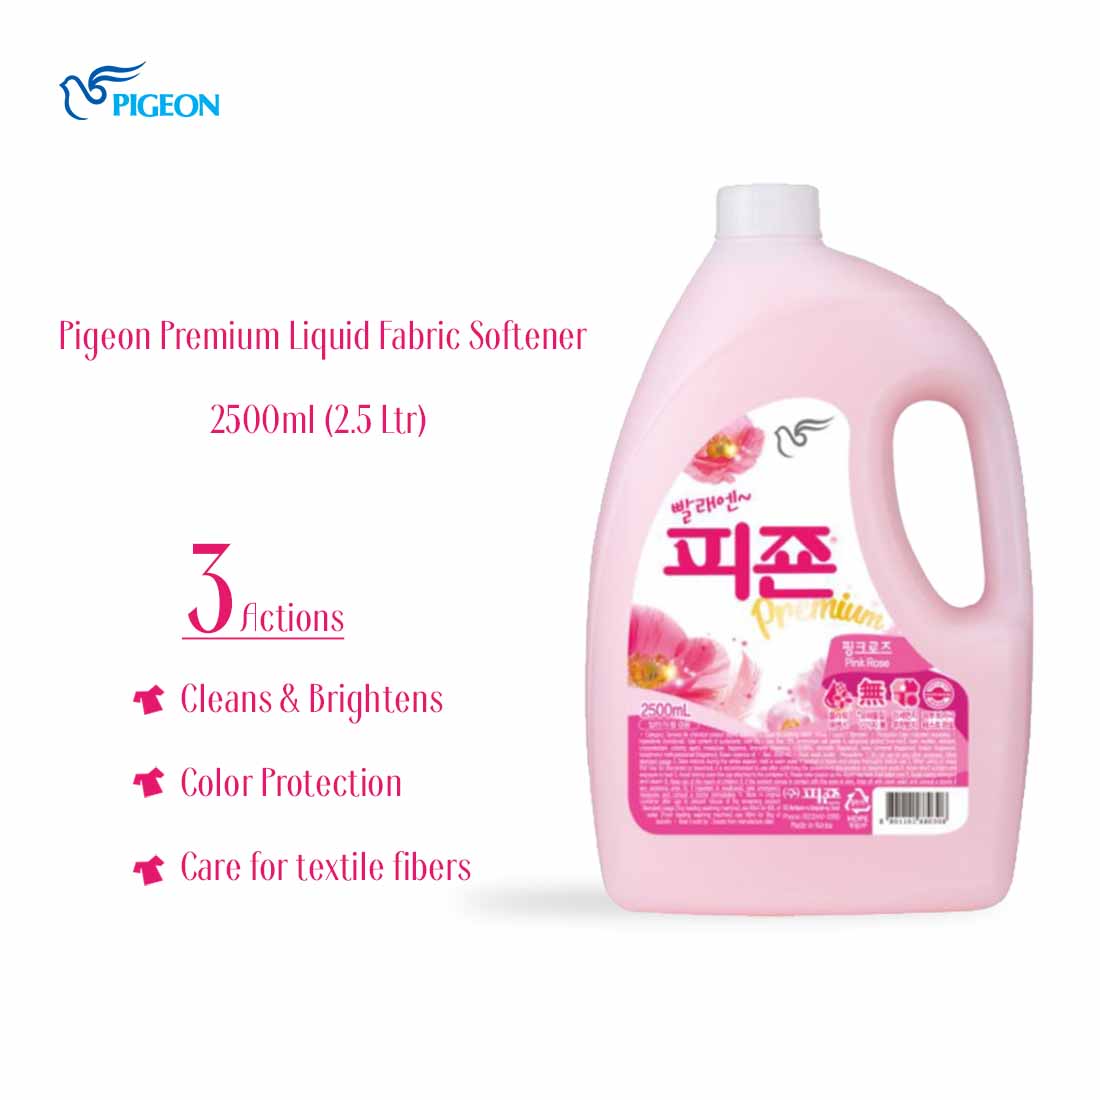 Pigeon-Premium-Liquid-Fabric-Softener_Product-Image-1_2